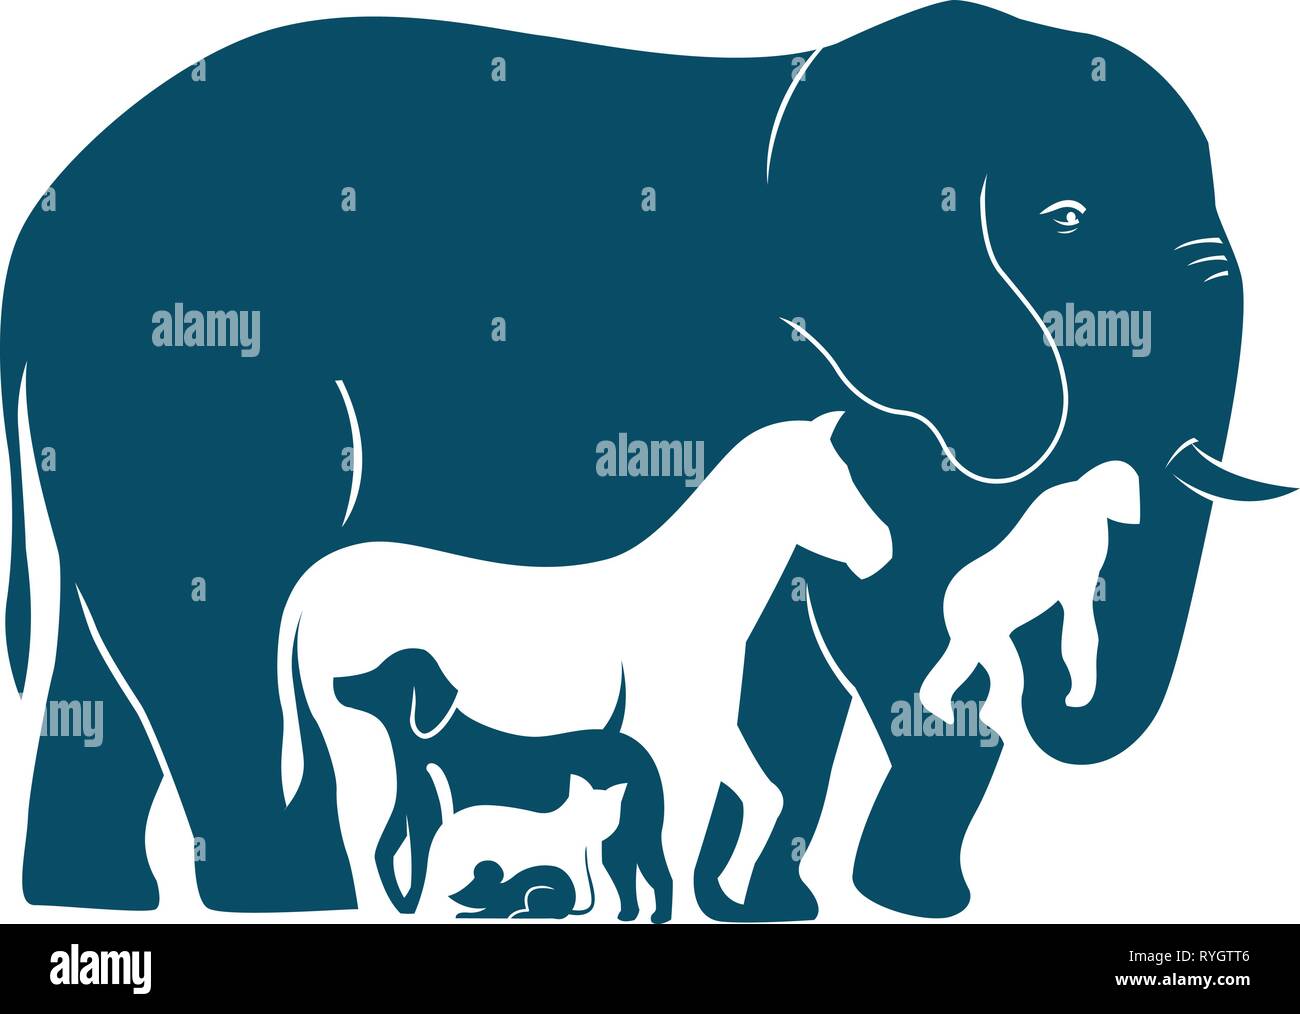 L'illustration présente plusieurs espèces de mammifères comme ils l'augmentation de poids. L'illustration fait dans le style d'ossature Illustration de Vecteur